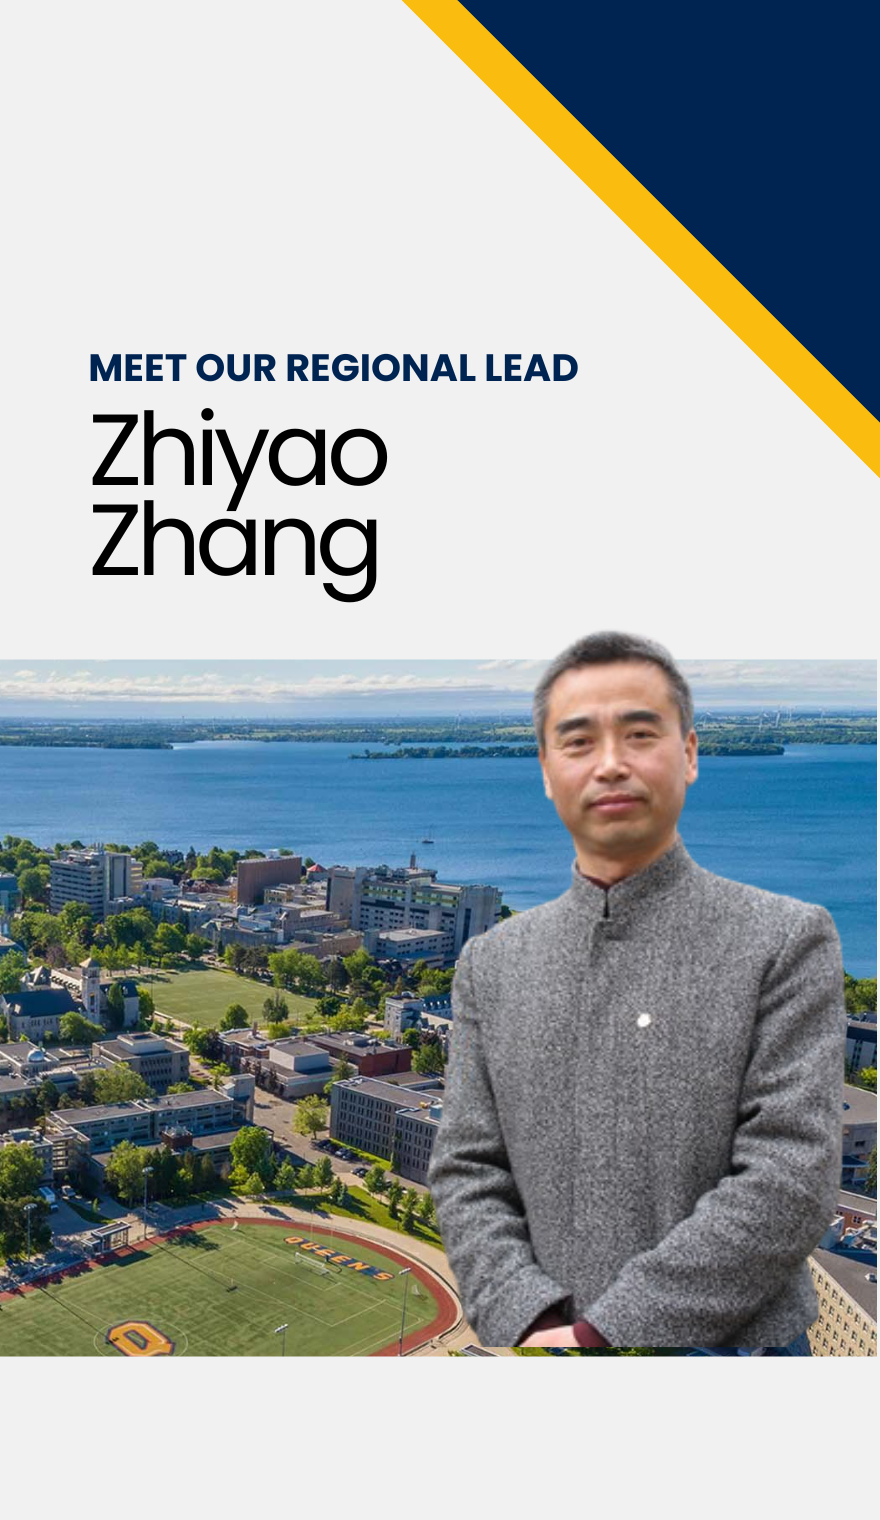 Zhiyao Zhang Regional Lead for Southeast Asia